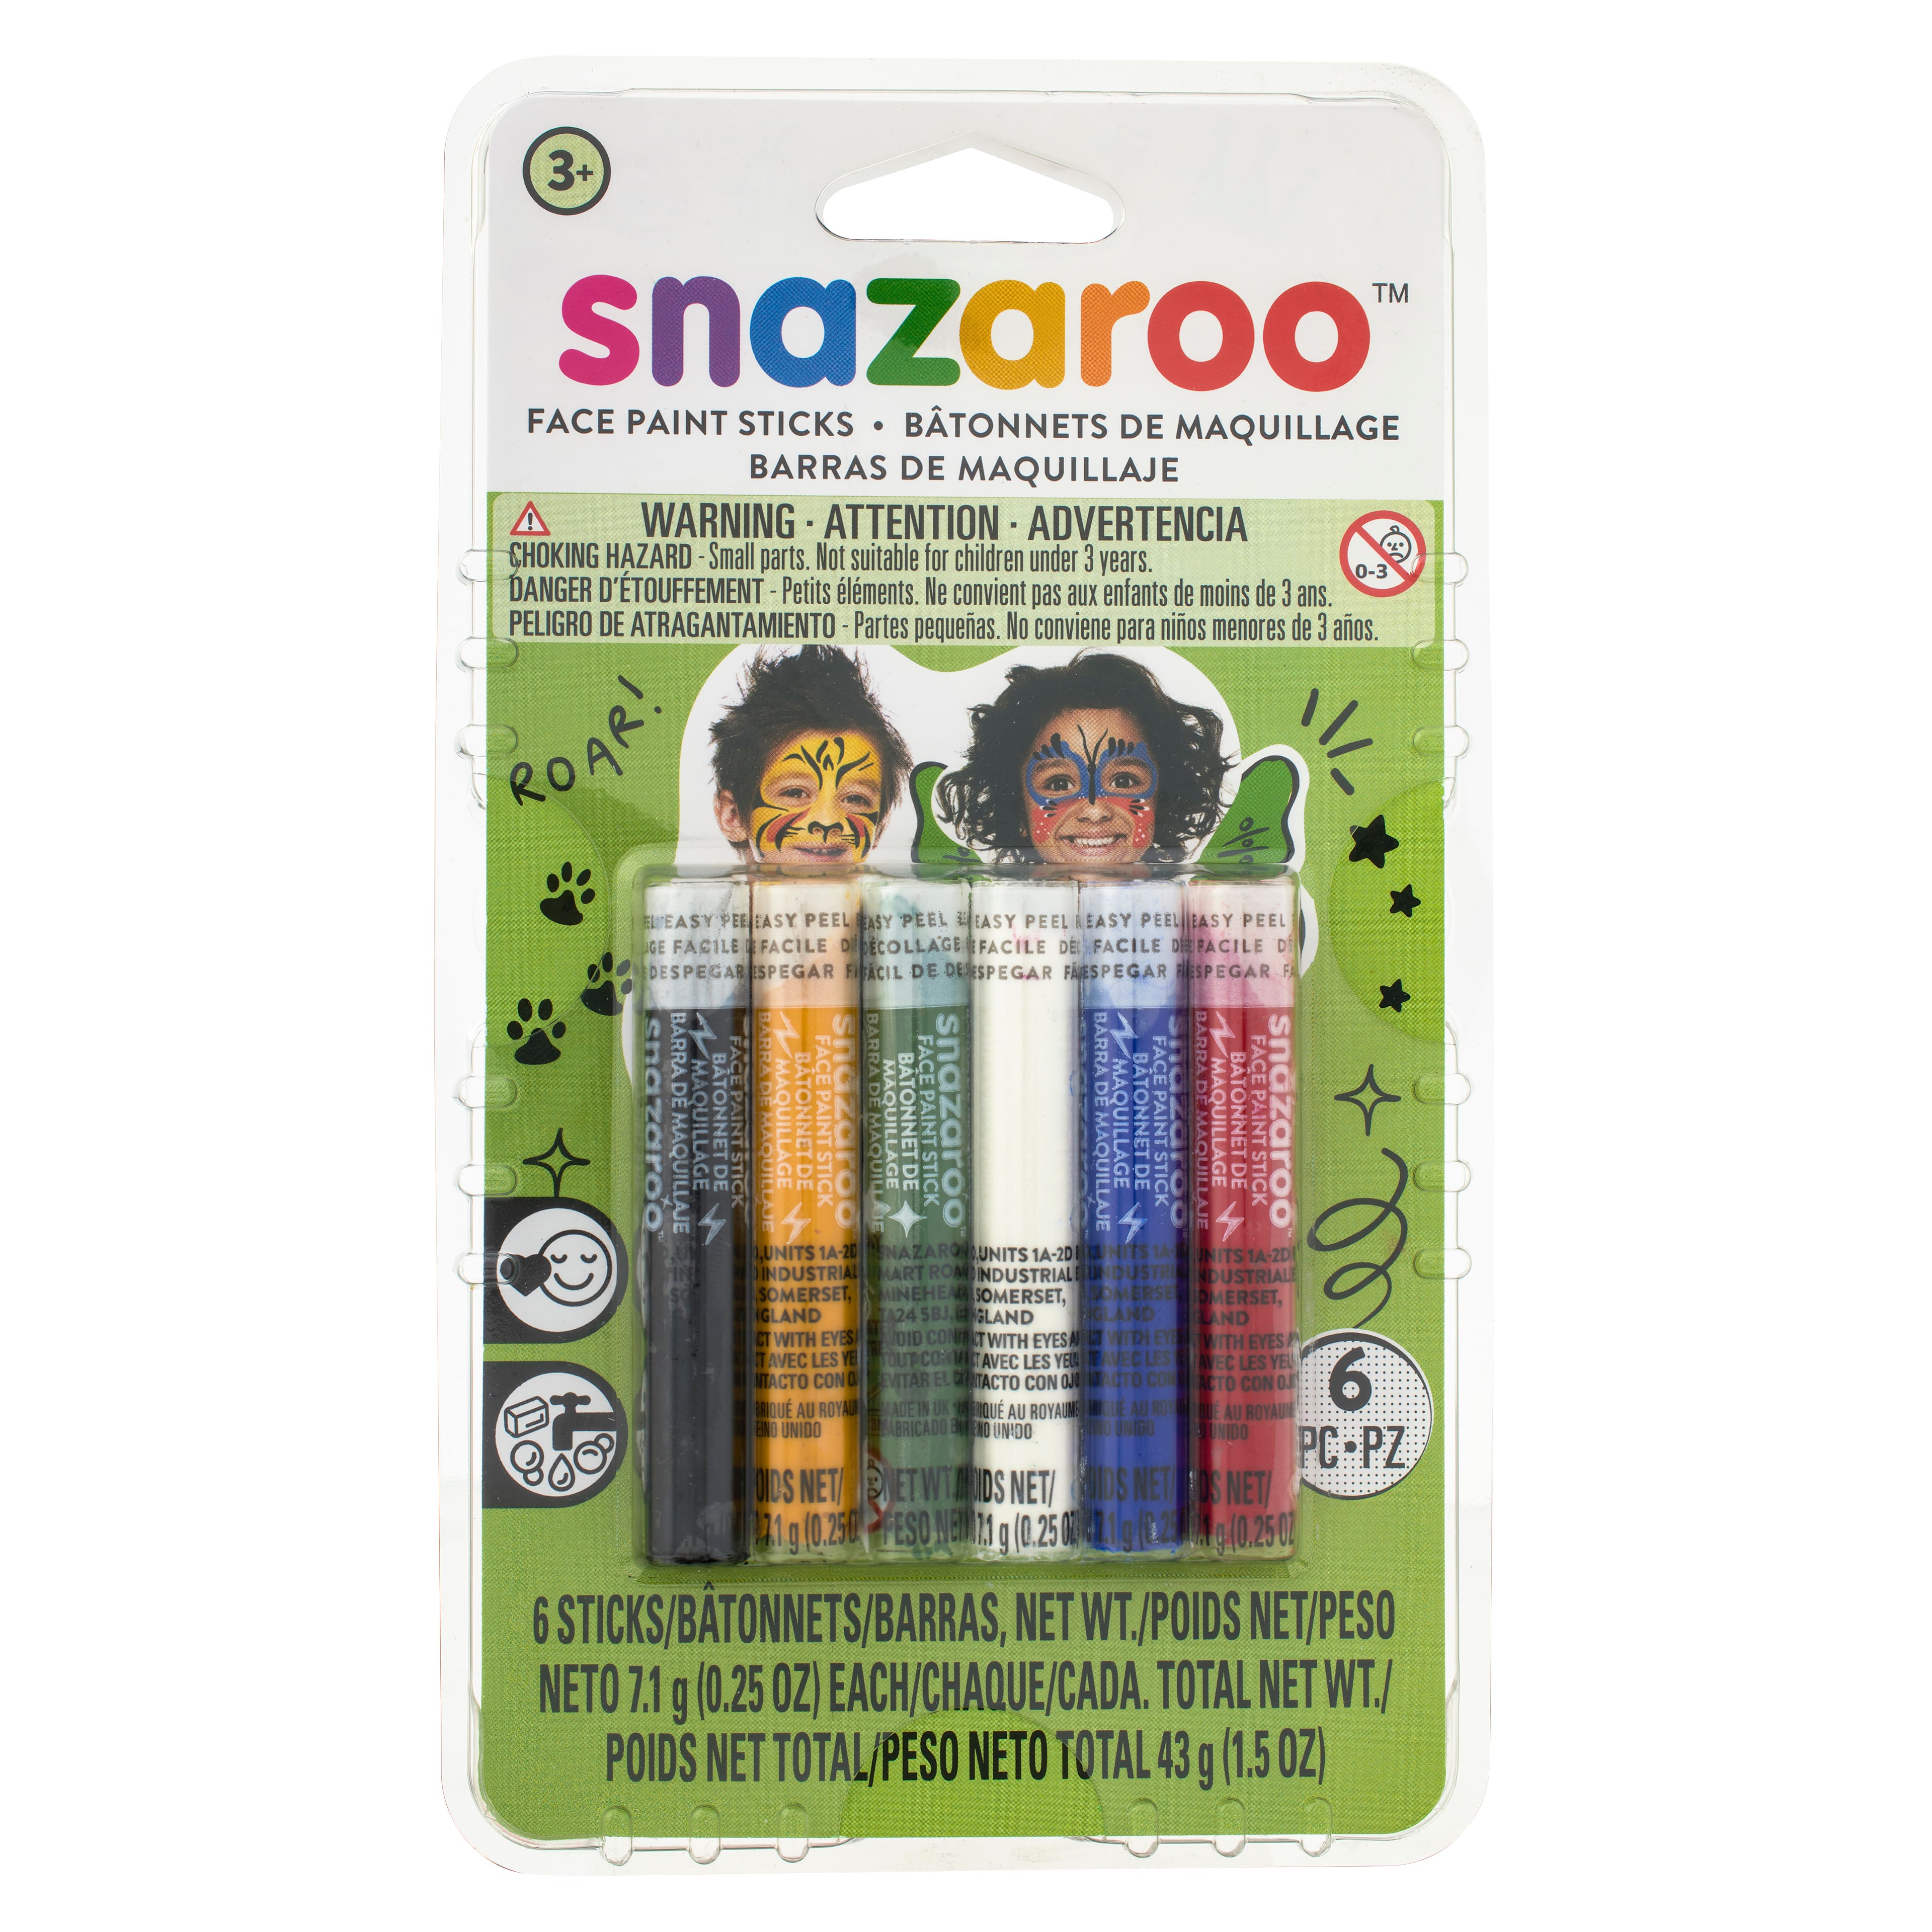 Snazaroo Adventure Face Paint Kit | Michaels